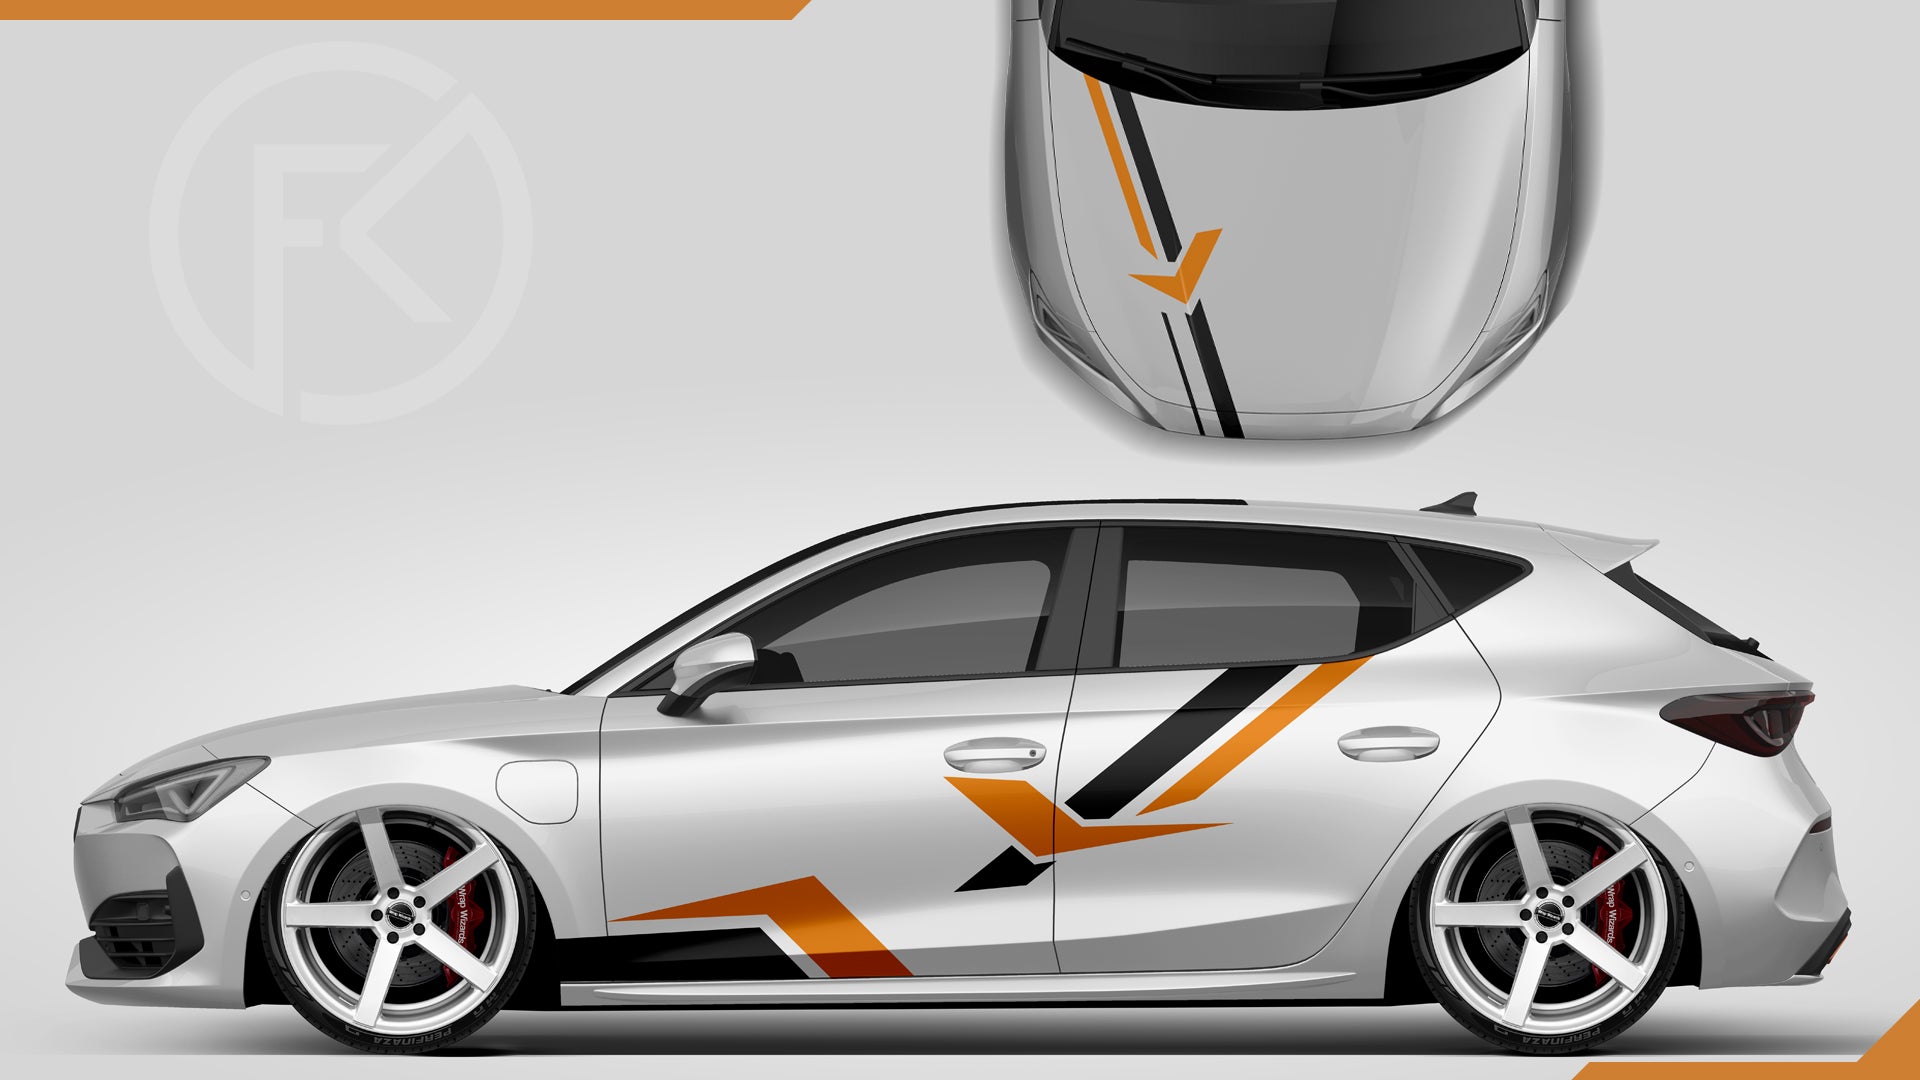 Abstrakt Car Wrapping Folien Dekor Rennstreifen Set Universal Auto styling #065